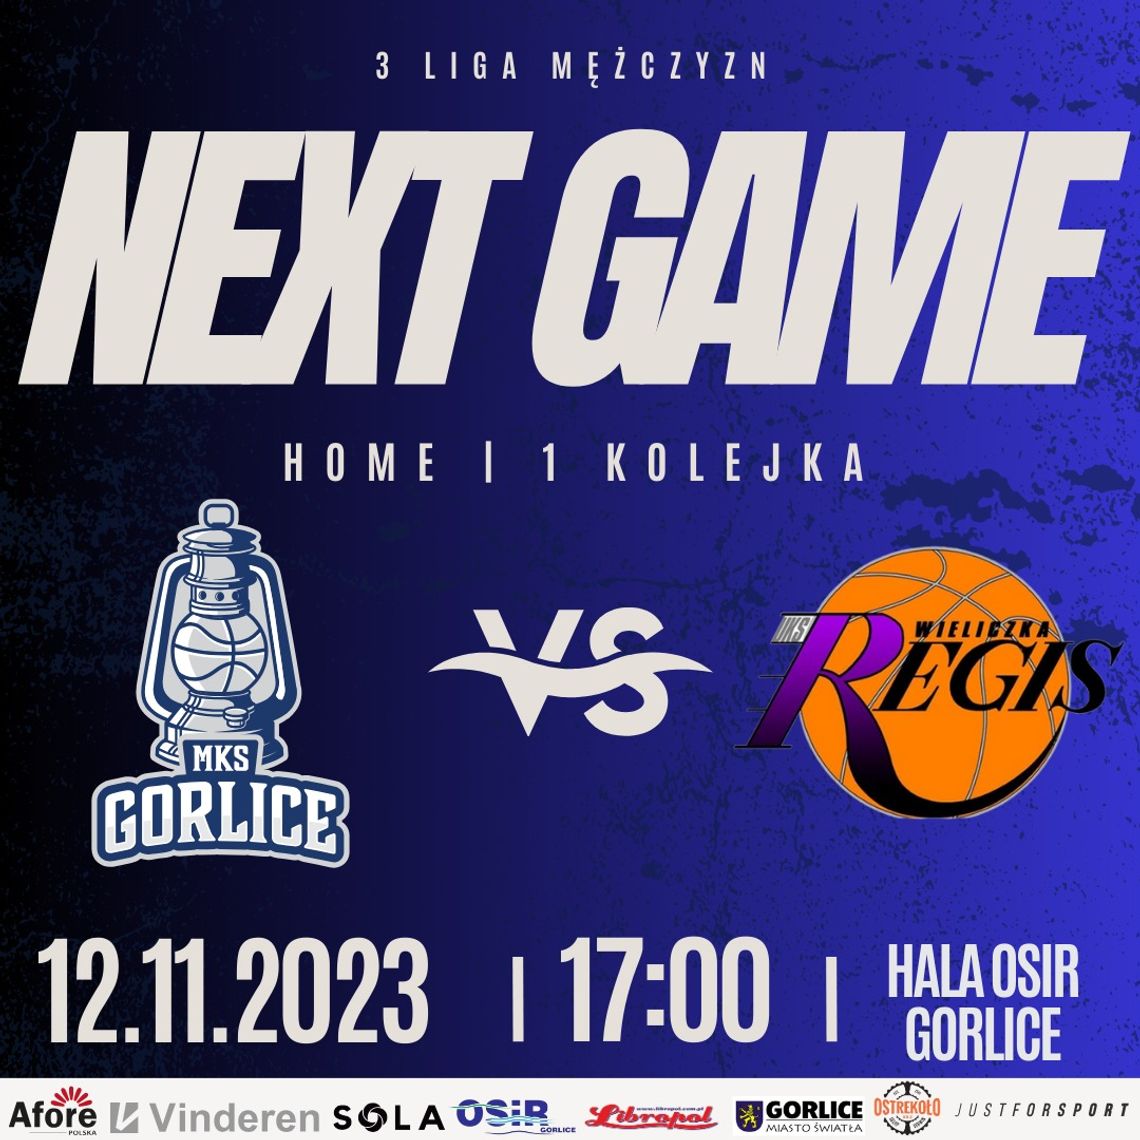 Koszykówka 3 liga mężczyzn MKS Gorlice - UKS Regis Wieliczka | halogorlice.info